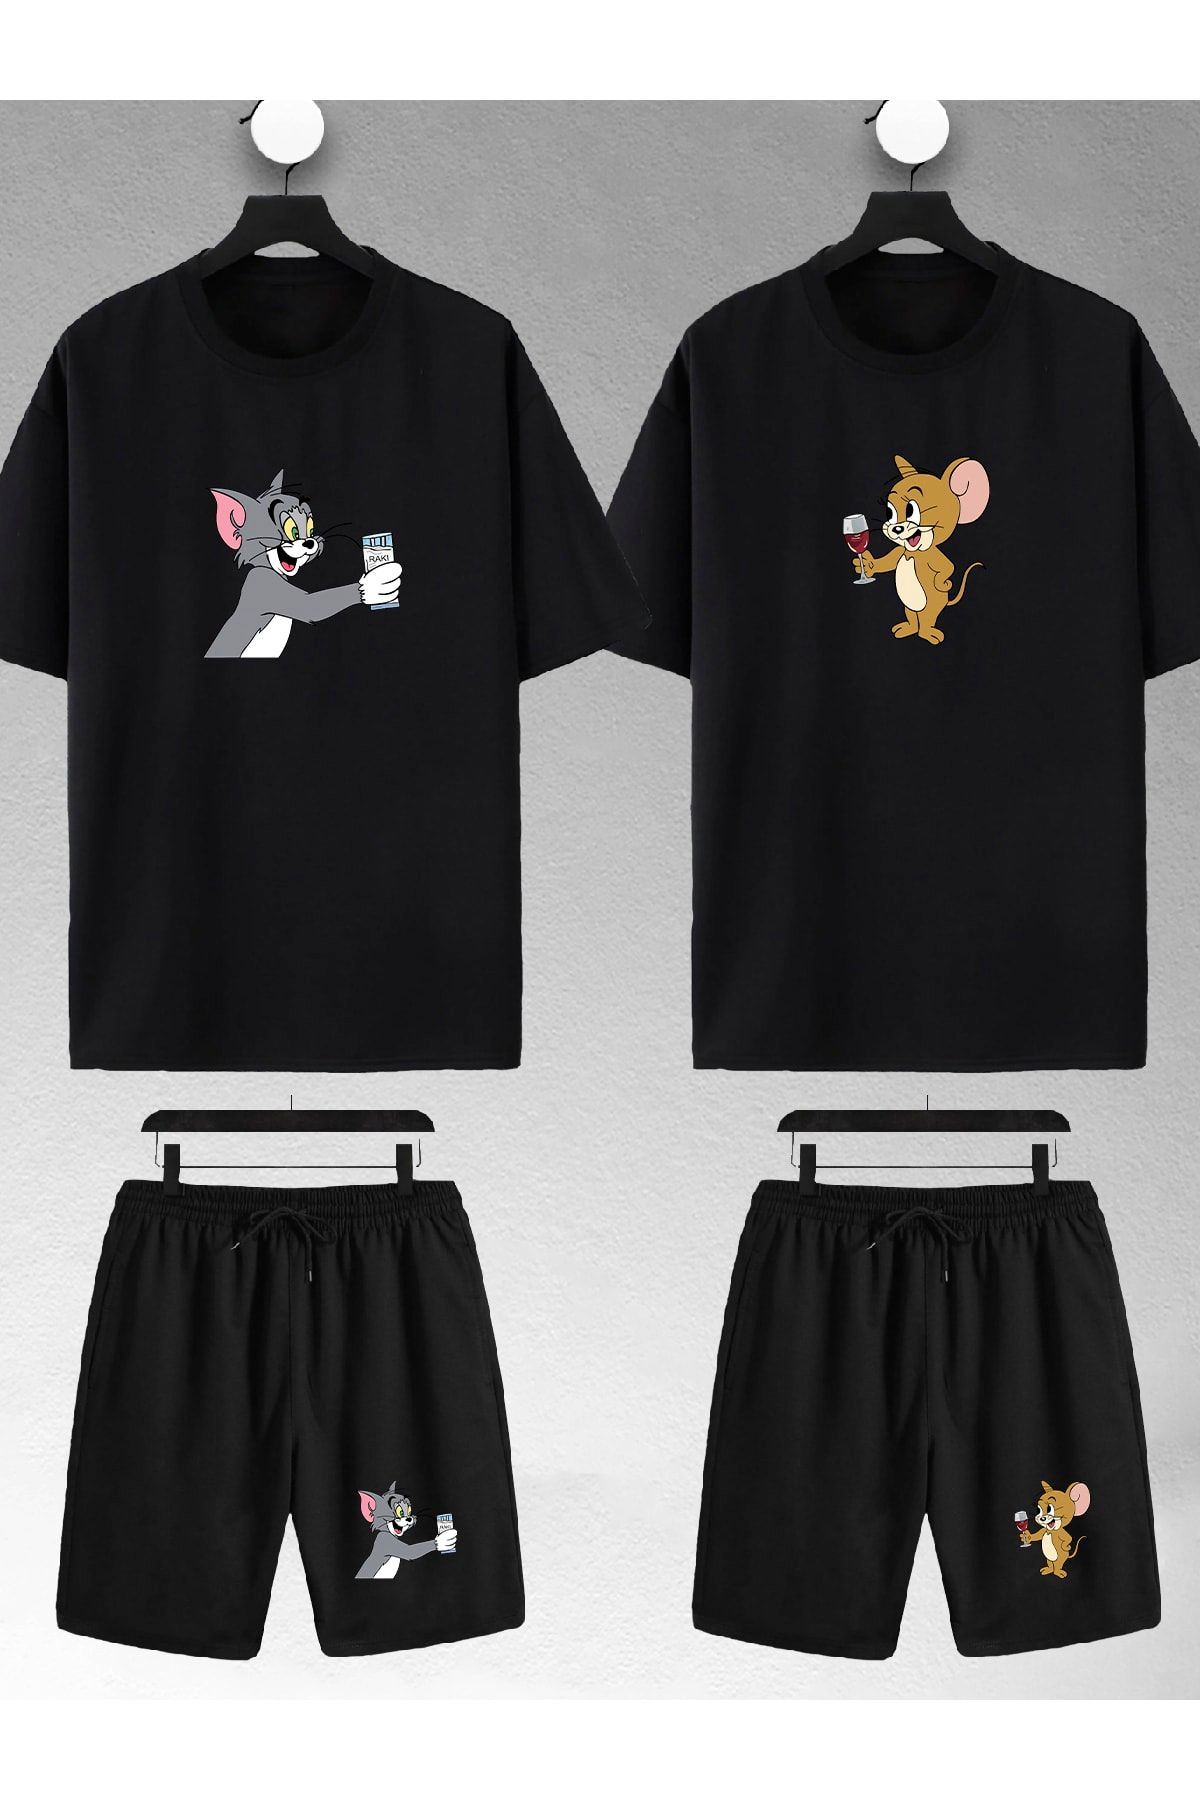 macklin Unisex Kadın Erkek Tom Ve Jerry Rakı Baskılı Sevgili Çift Kombini Tasarım Oversize Tshirt Ve Şort